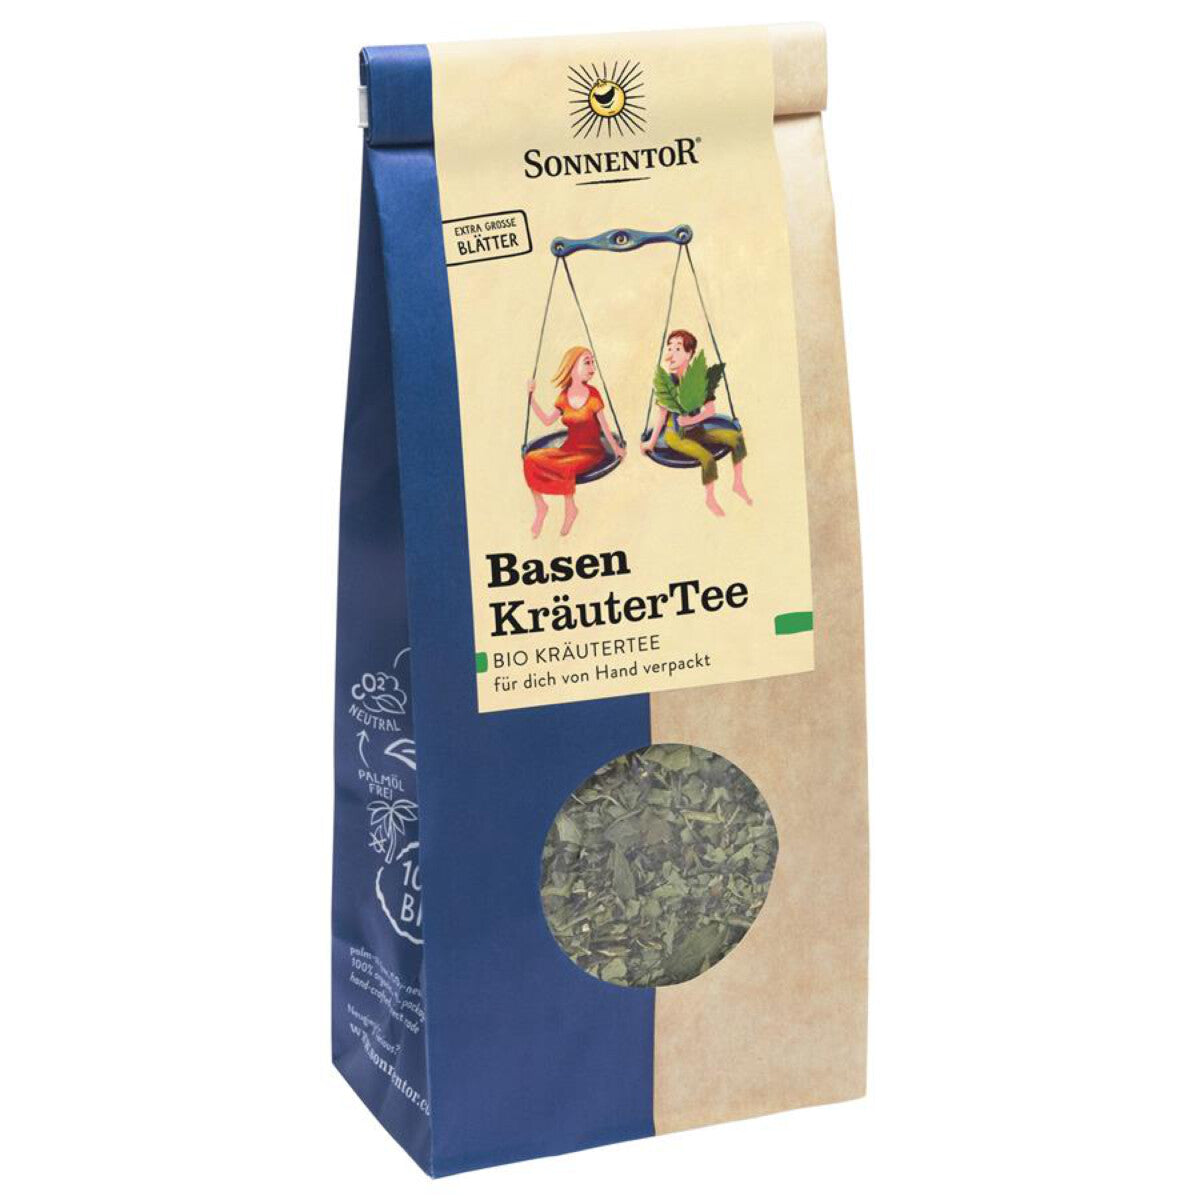 SONNENTOR Basen Kräuter Tee - 50 g